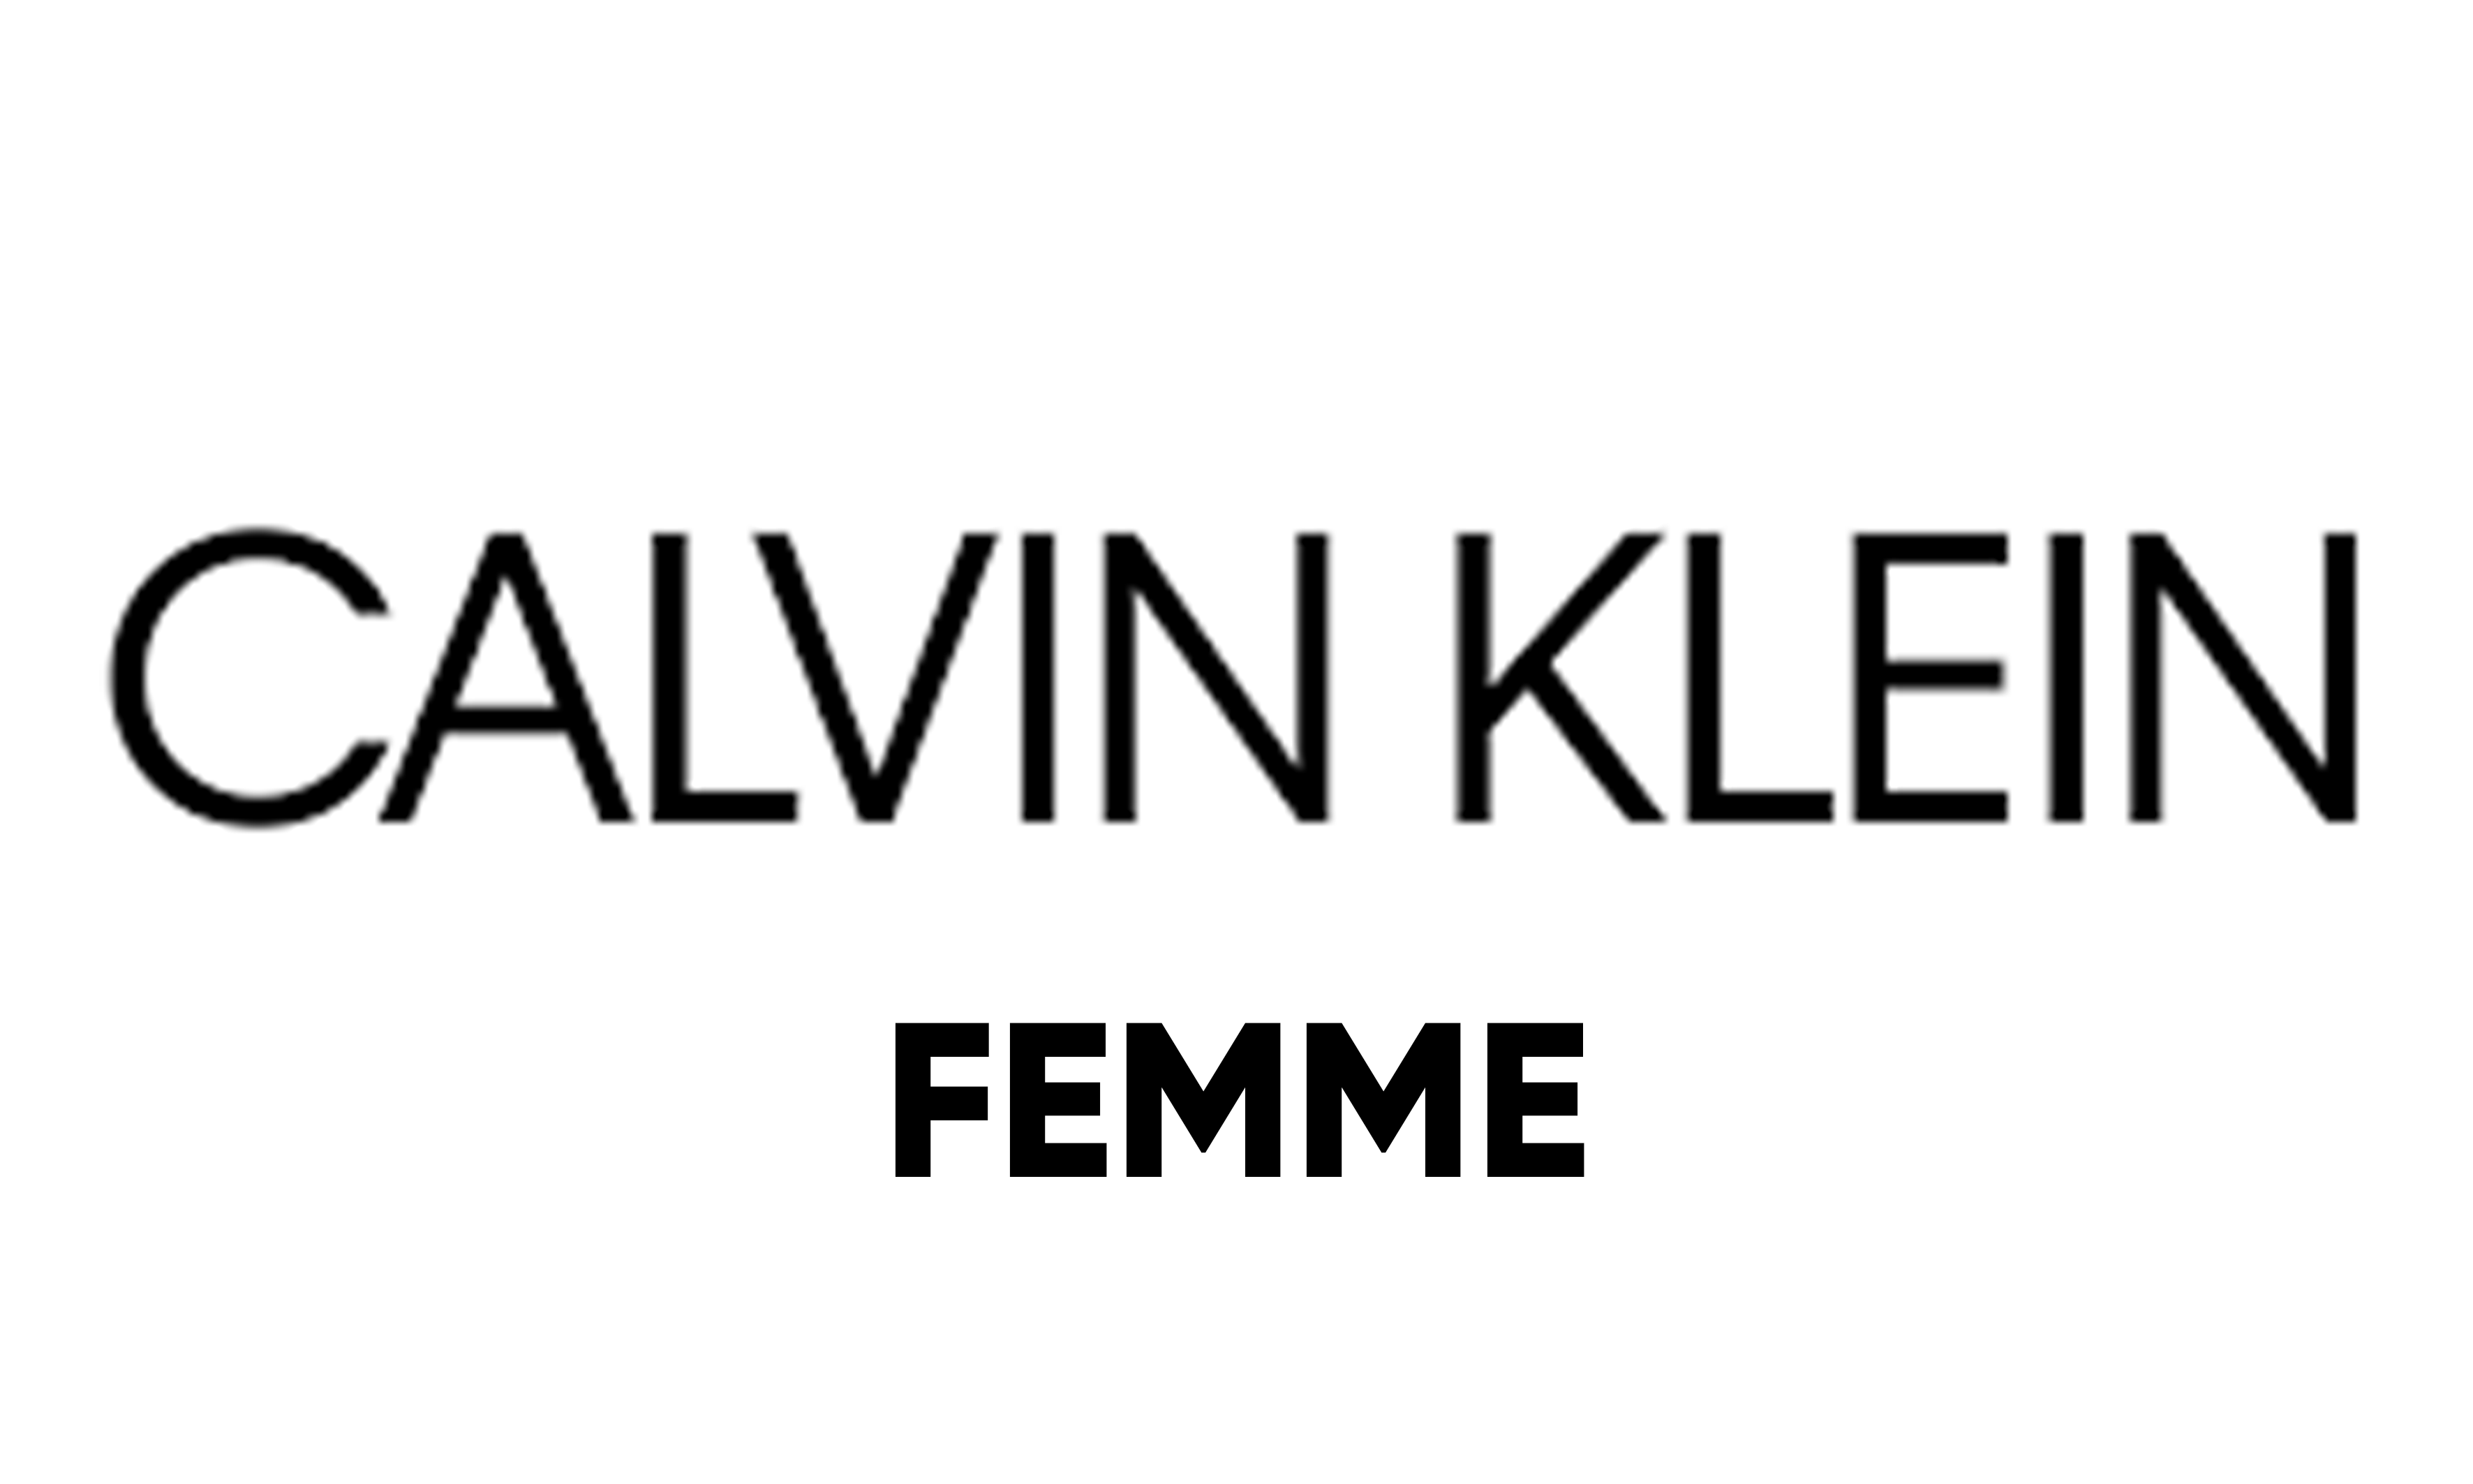 CALVIN KLEIN J.FEMME